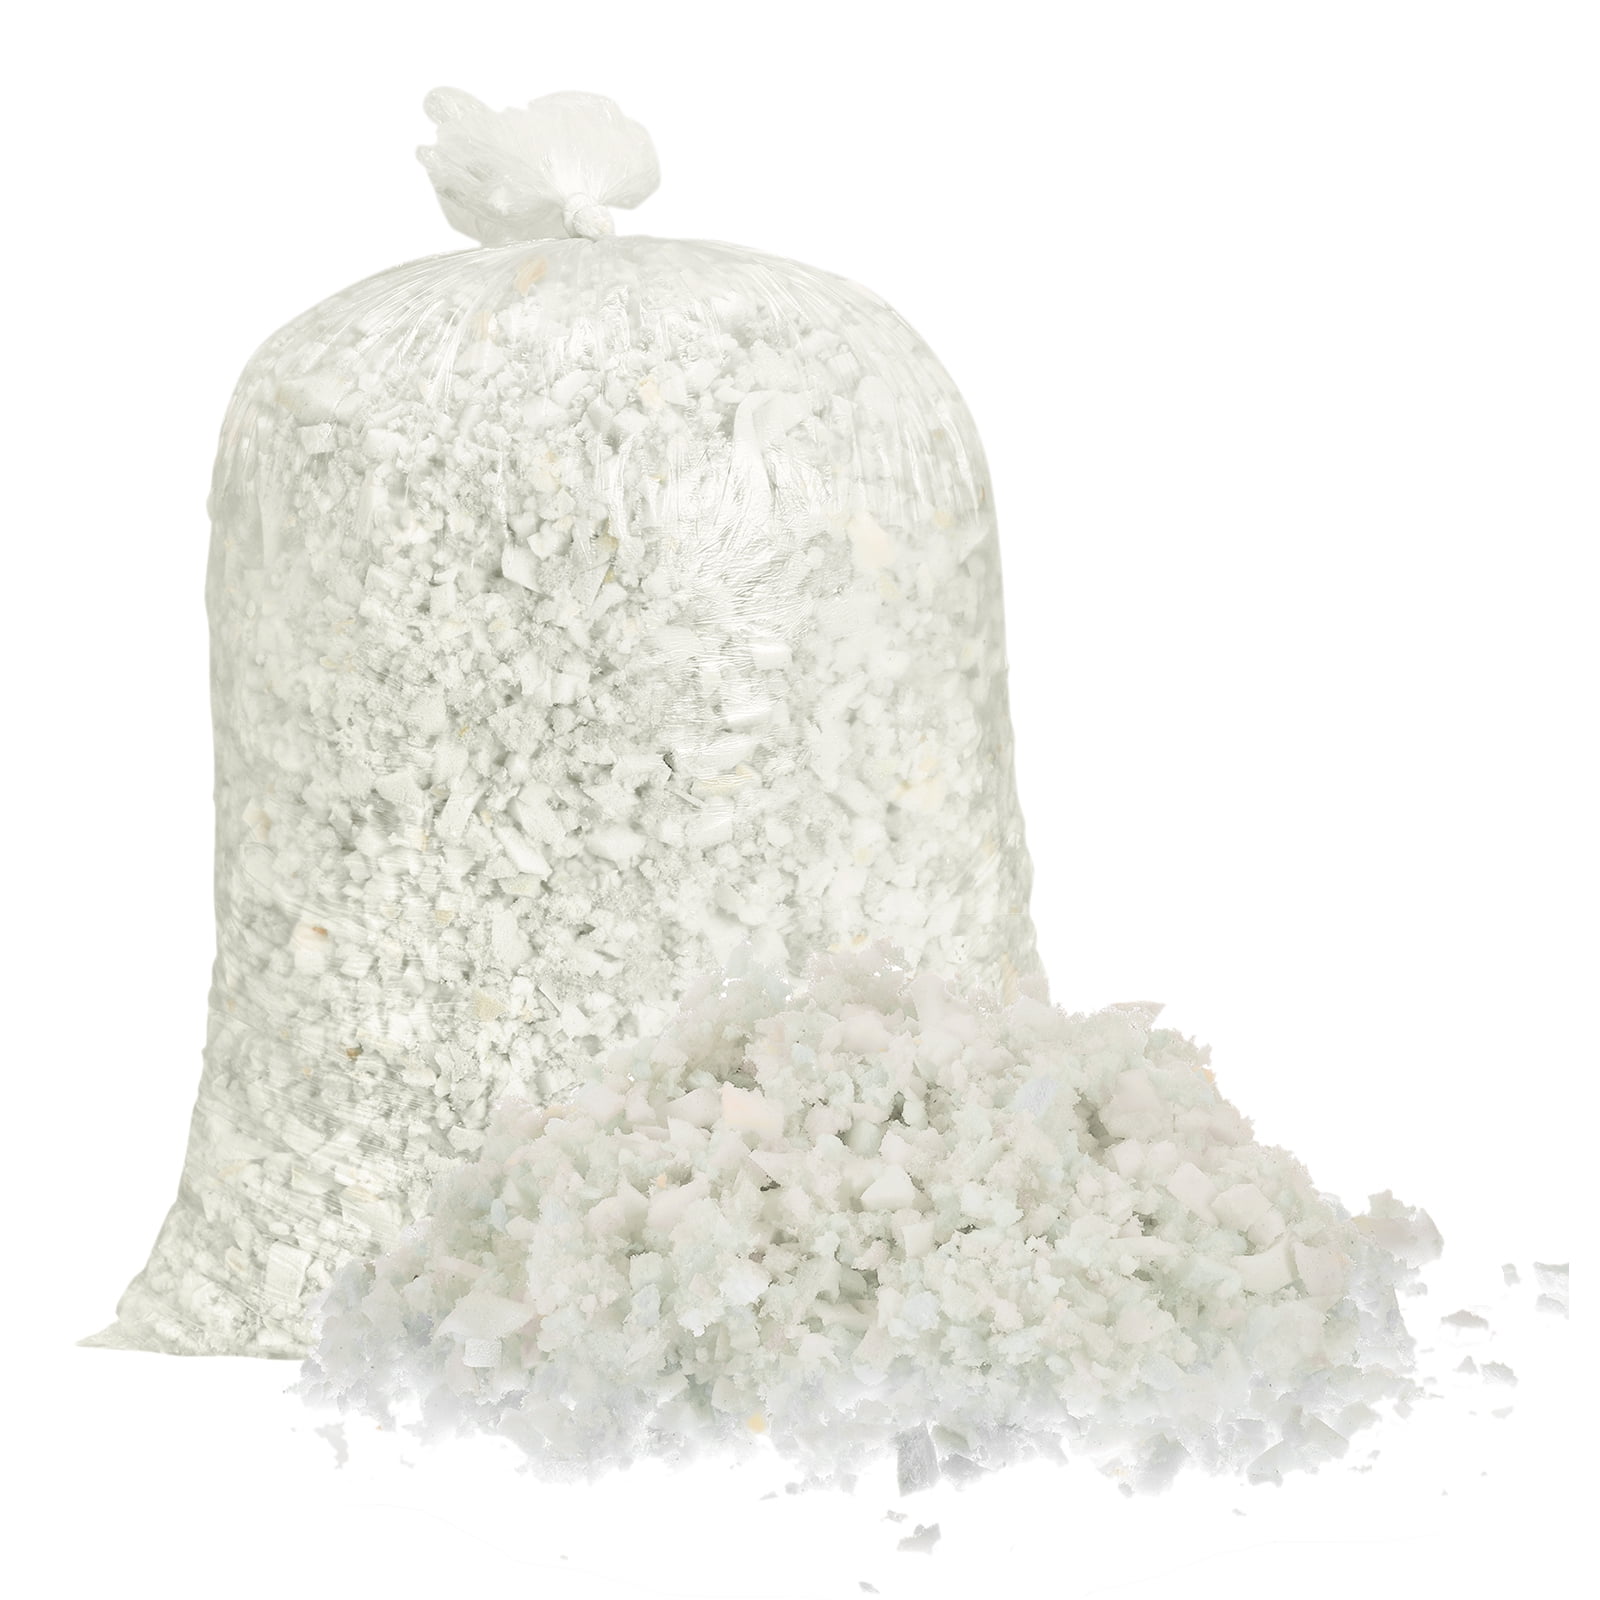 Shredded Memory Foam Filling, 5 Pounds Bean Bag Filler Foam for